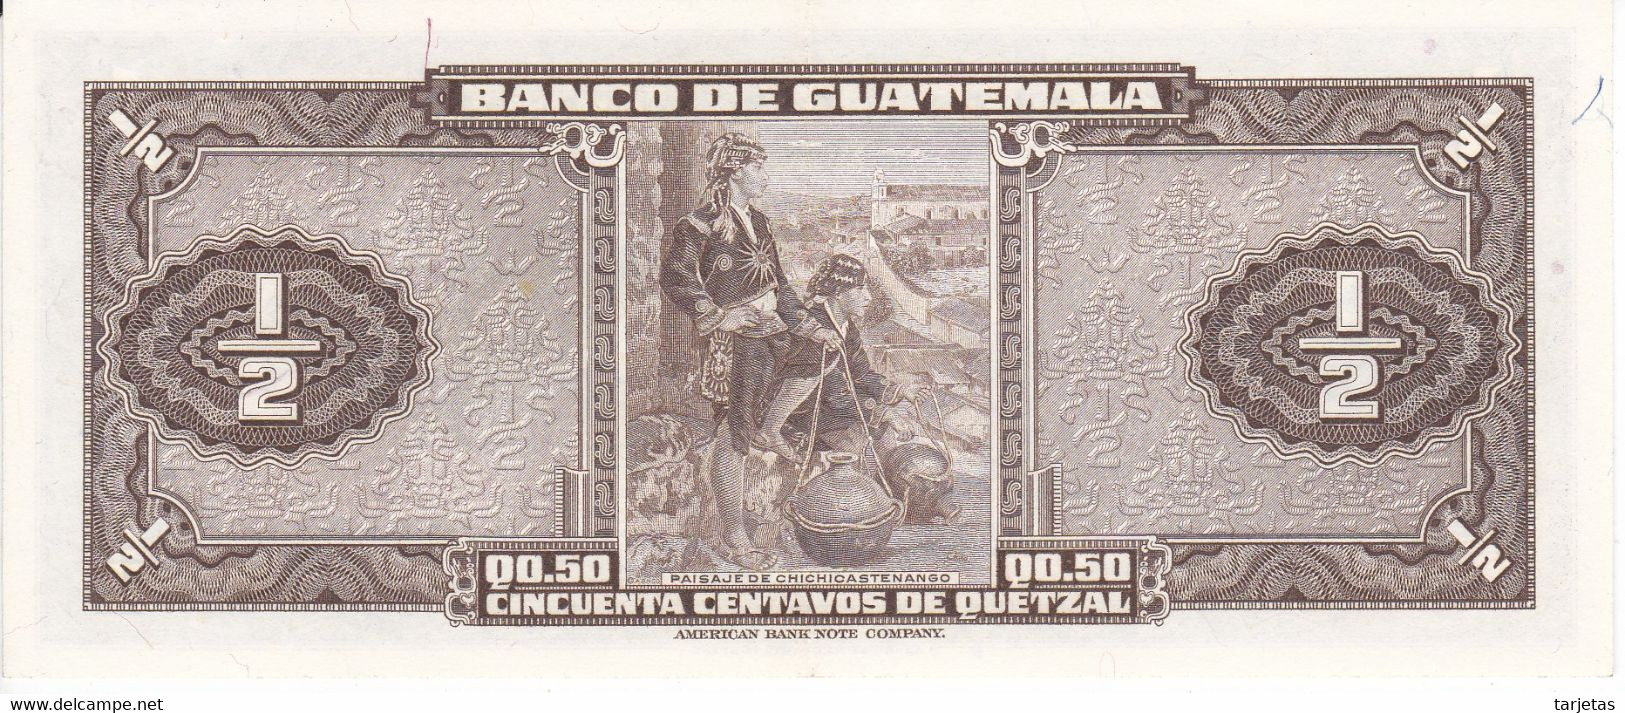 BILLETE DE GUATEMALA DE 50 CENTAVOS DE QUETZAL DEL AÑO 1958 EN CALIDAD EBC (XF) (BANKNOTE)  RARO - Guatemala